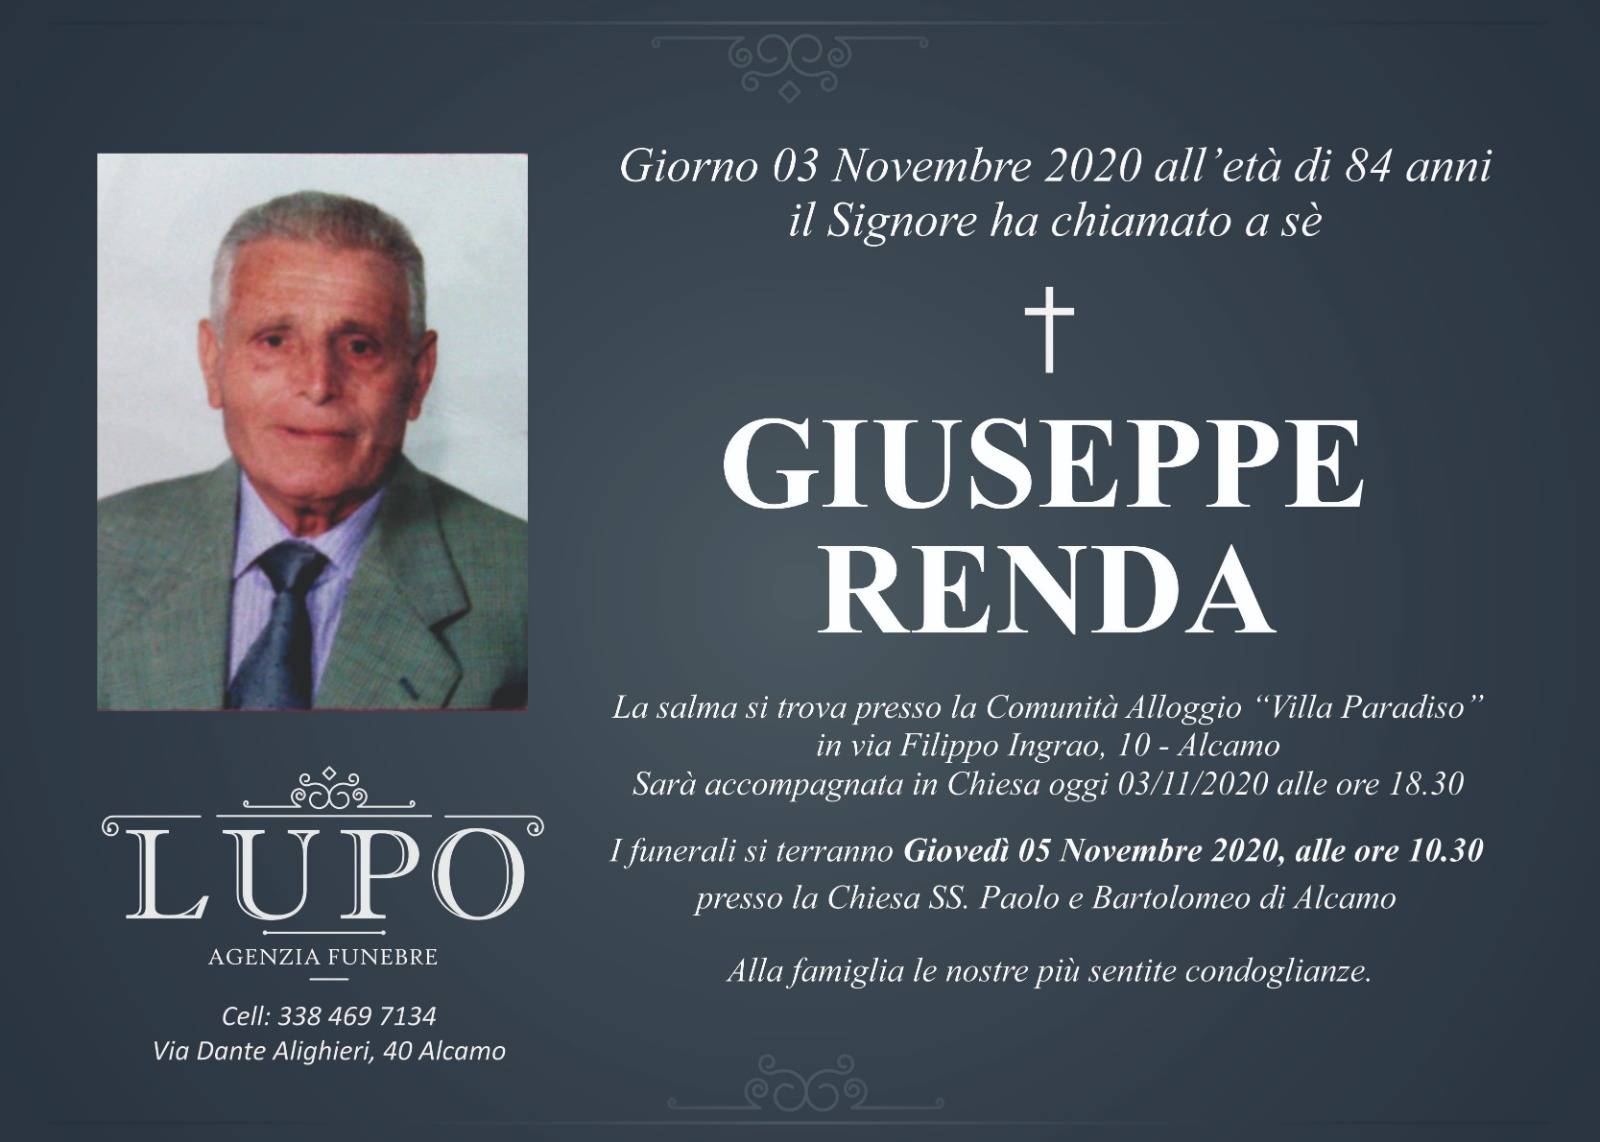 Giuseppe Renda